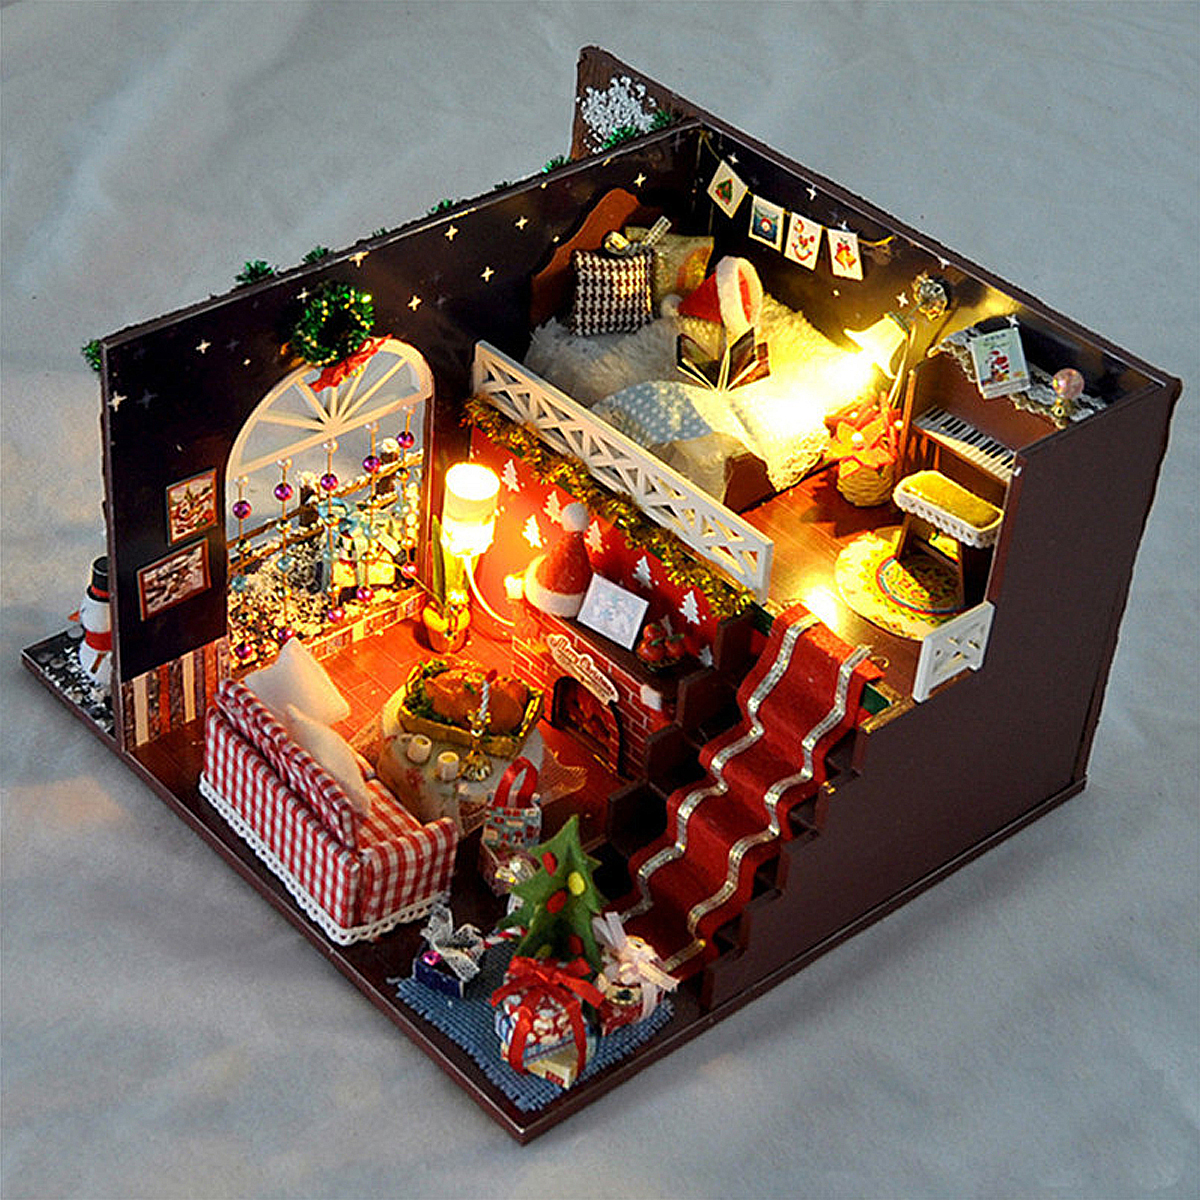 T Yu DIY Kits Maison De Noel Decoration Miniature En Bois Maison De Poupee Jouets Pour Enfants Cadeau Jouet